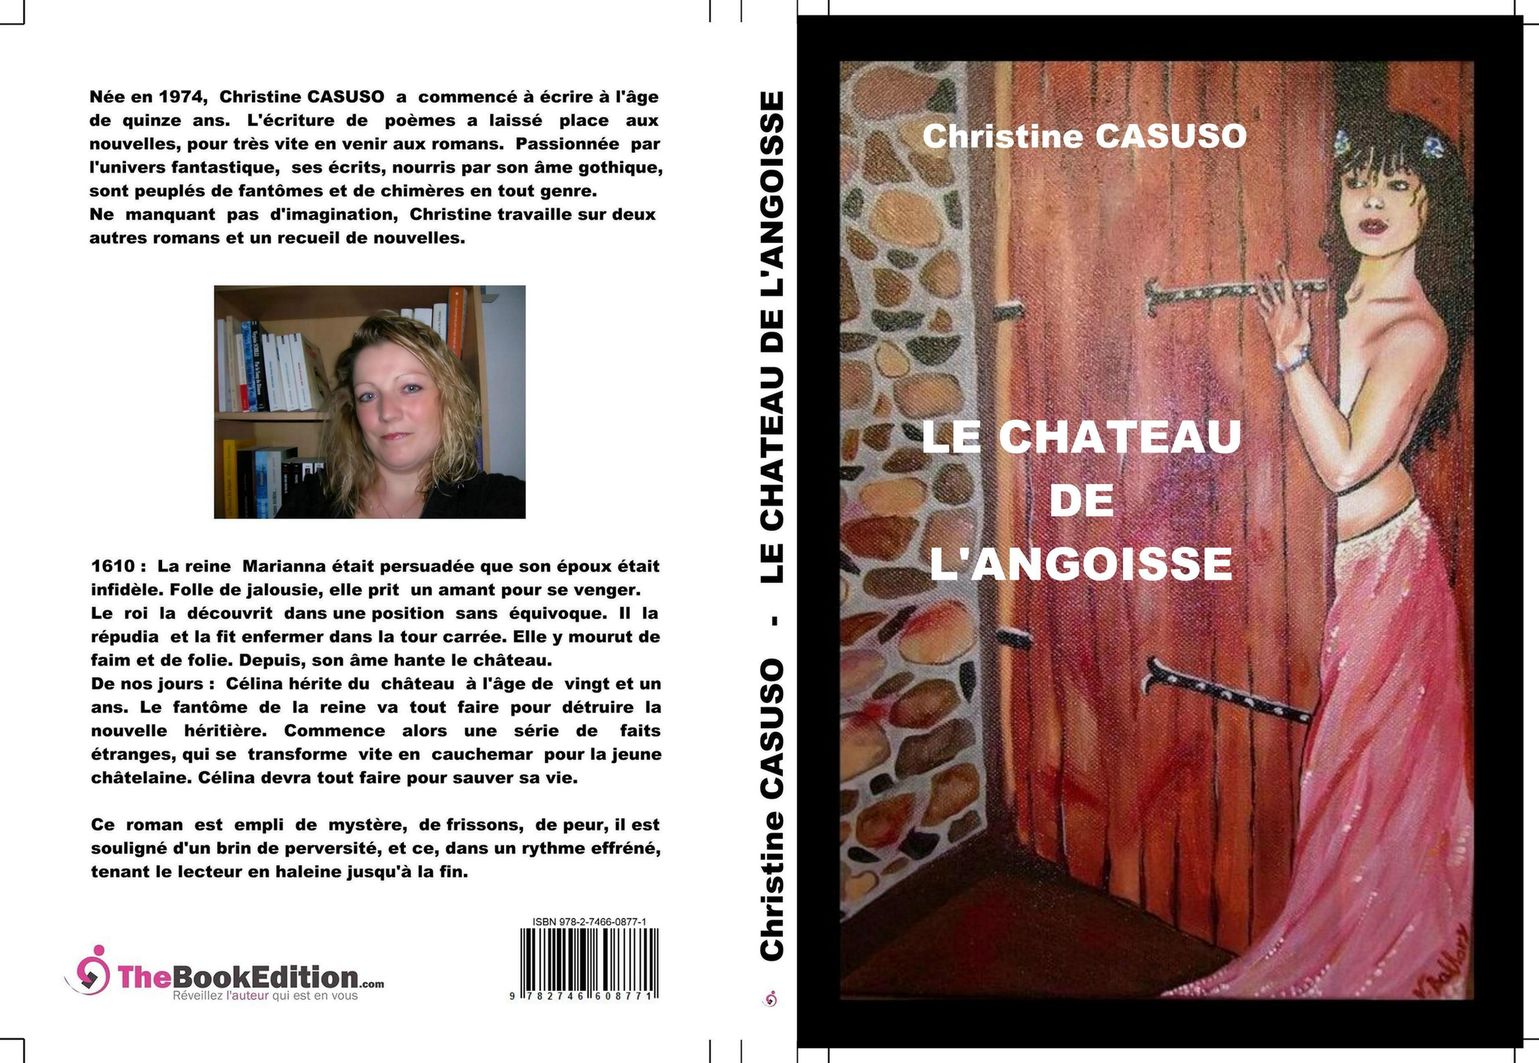 couverture du roman de C. Casuso "le château de l`angoisse"